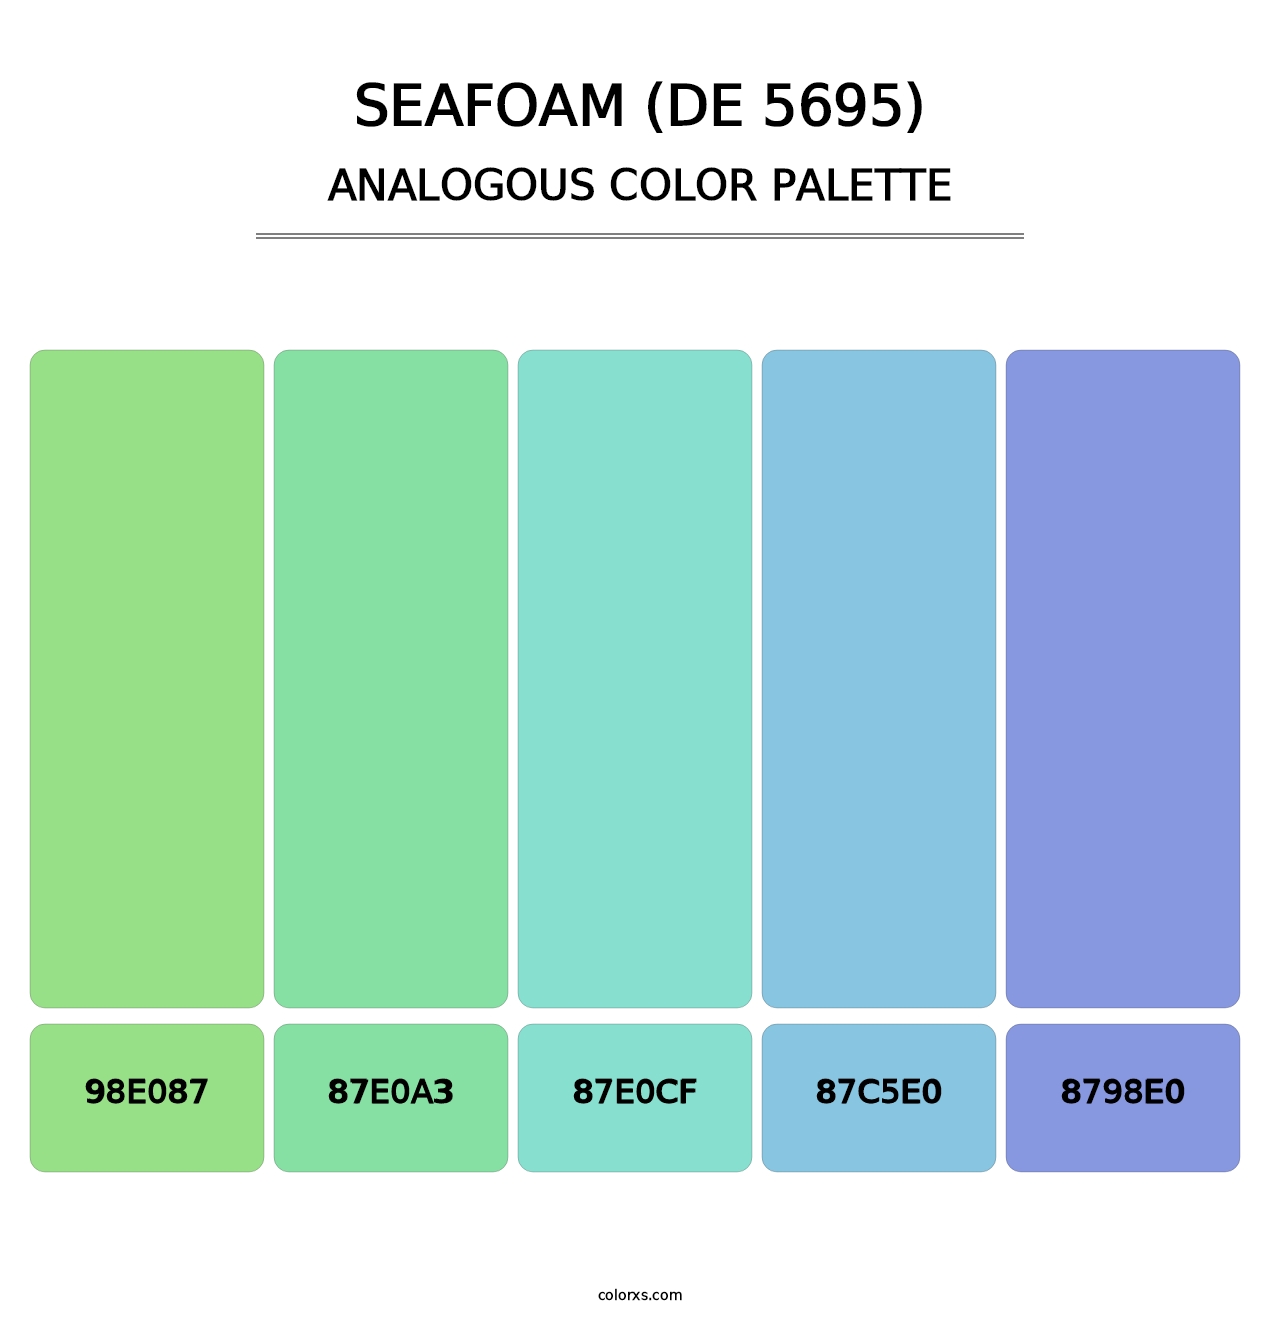 Seafoam (DE 5695) - Analogous Color Palette